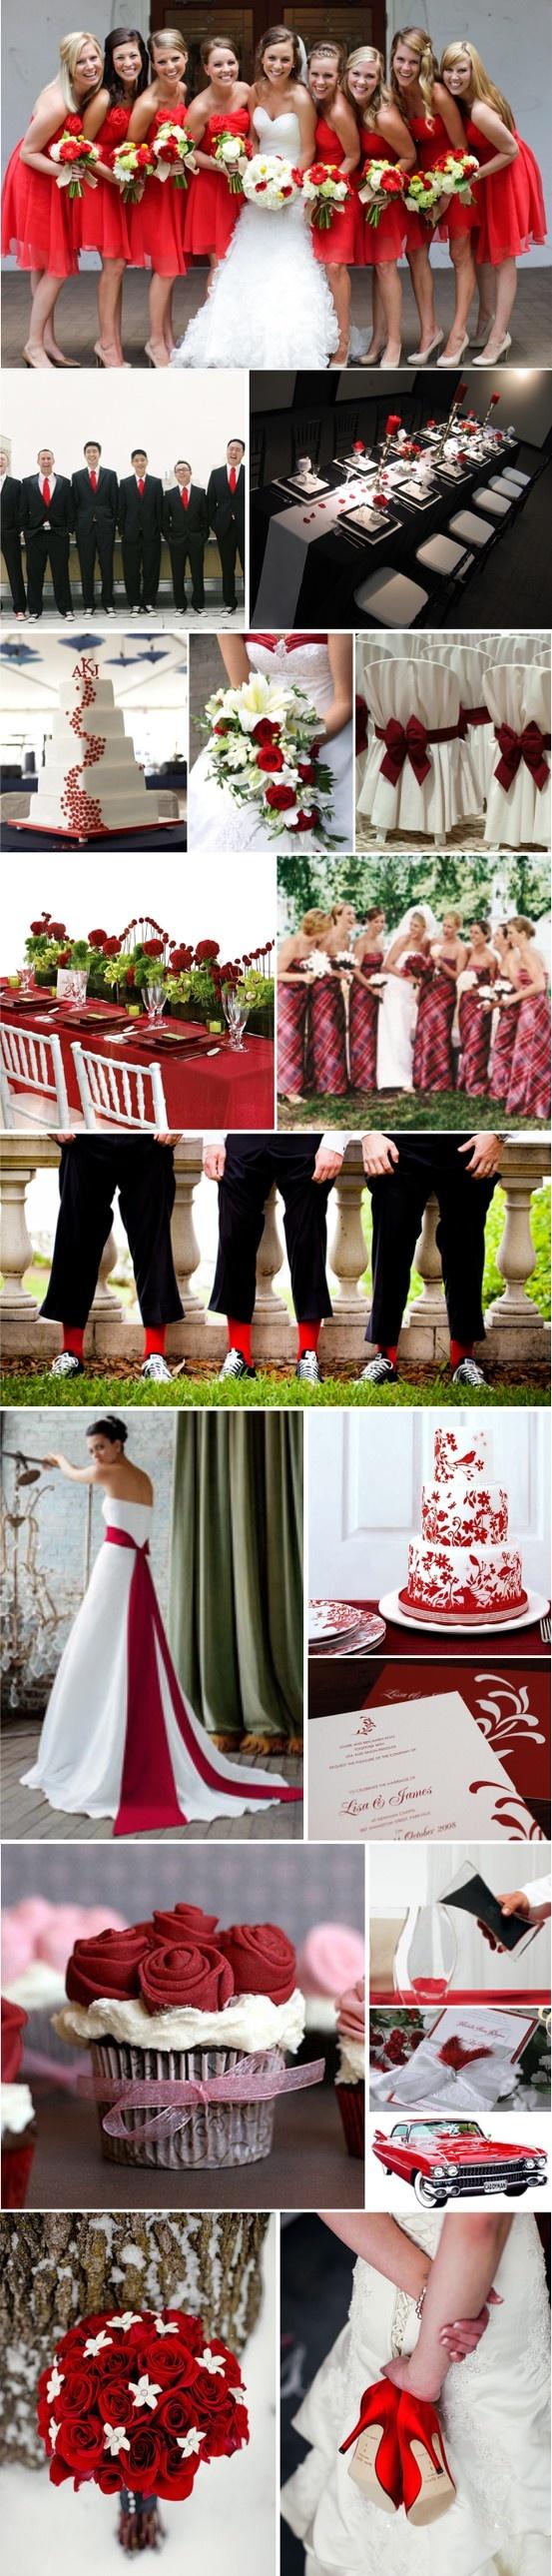 زفاف - حفلات الزفاف الأحمر